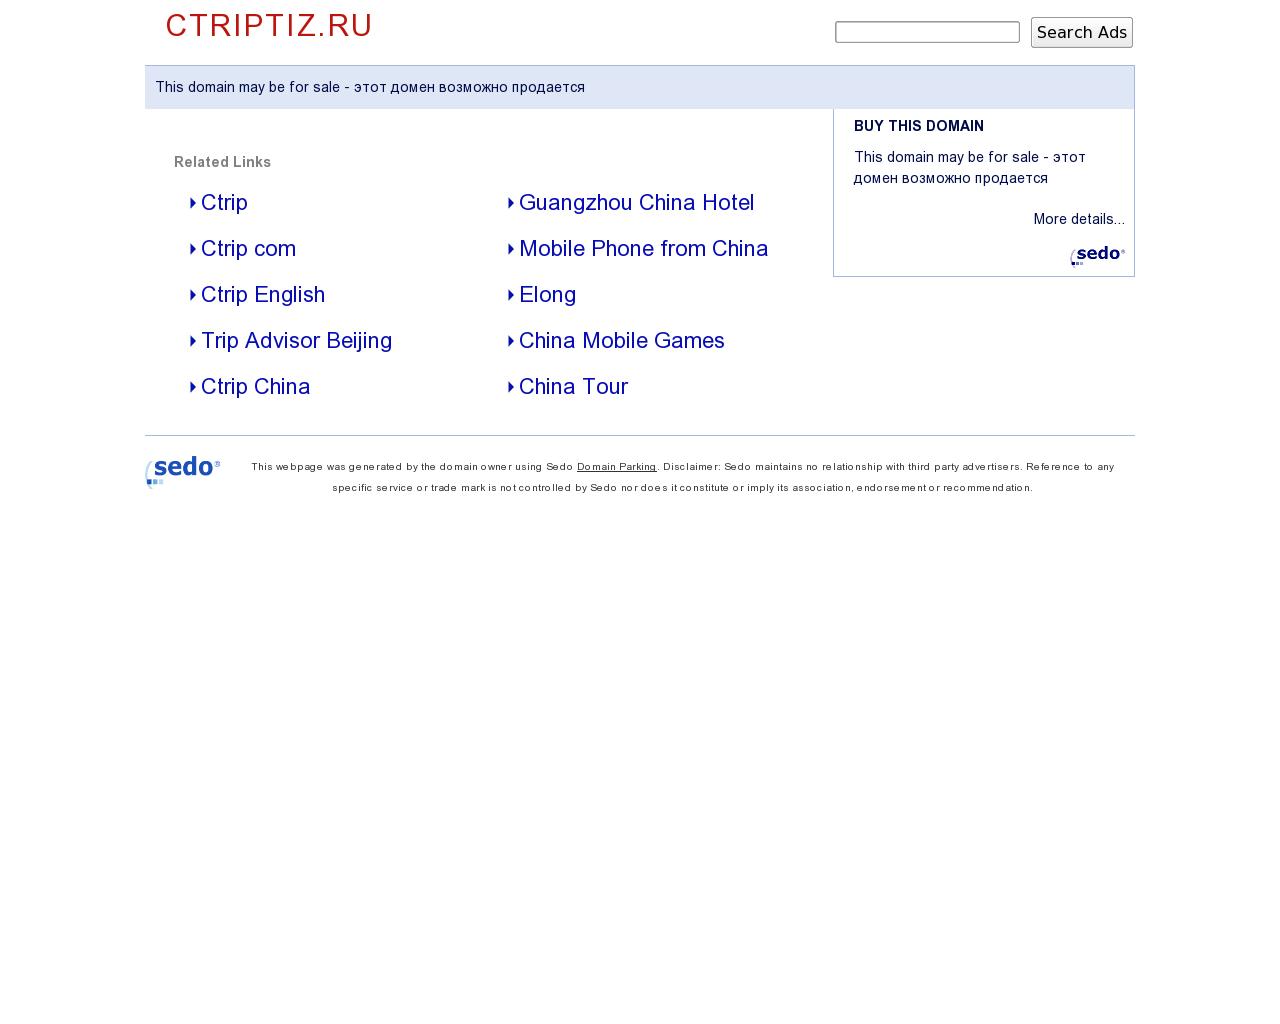 Изображение сайта ctriptiz.ru в разрешении 1280x1024